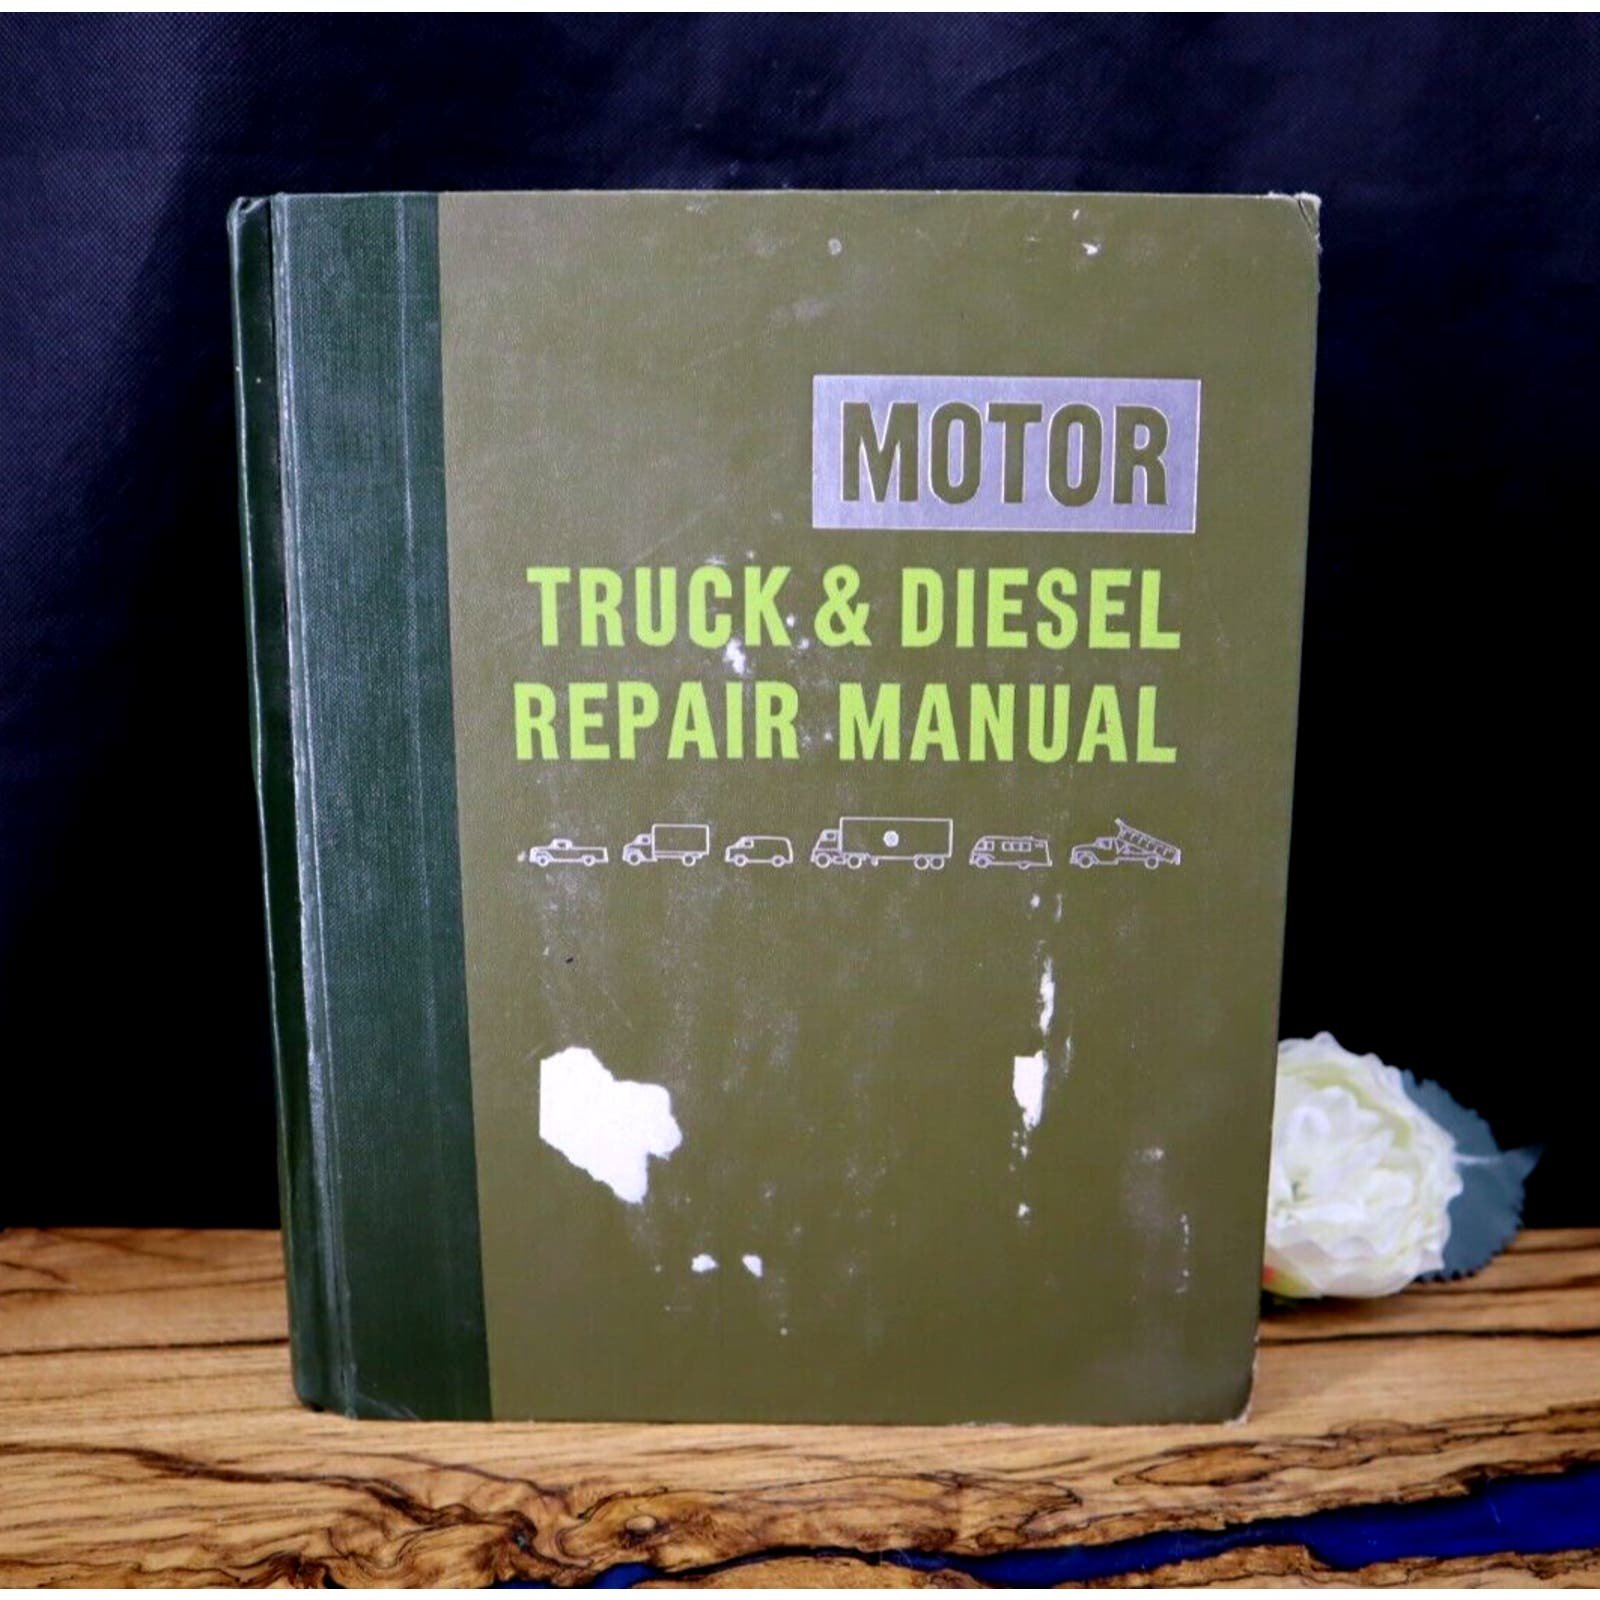 Hardcover 1974 Motor Truck & Diesel Repair Manual 27th Edition FIRST PRINTING jlg5bAnu0